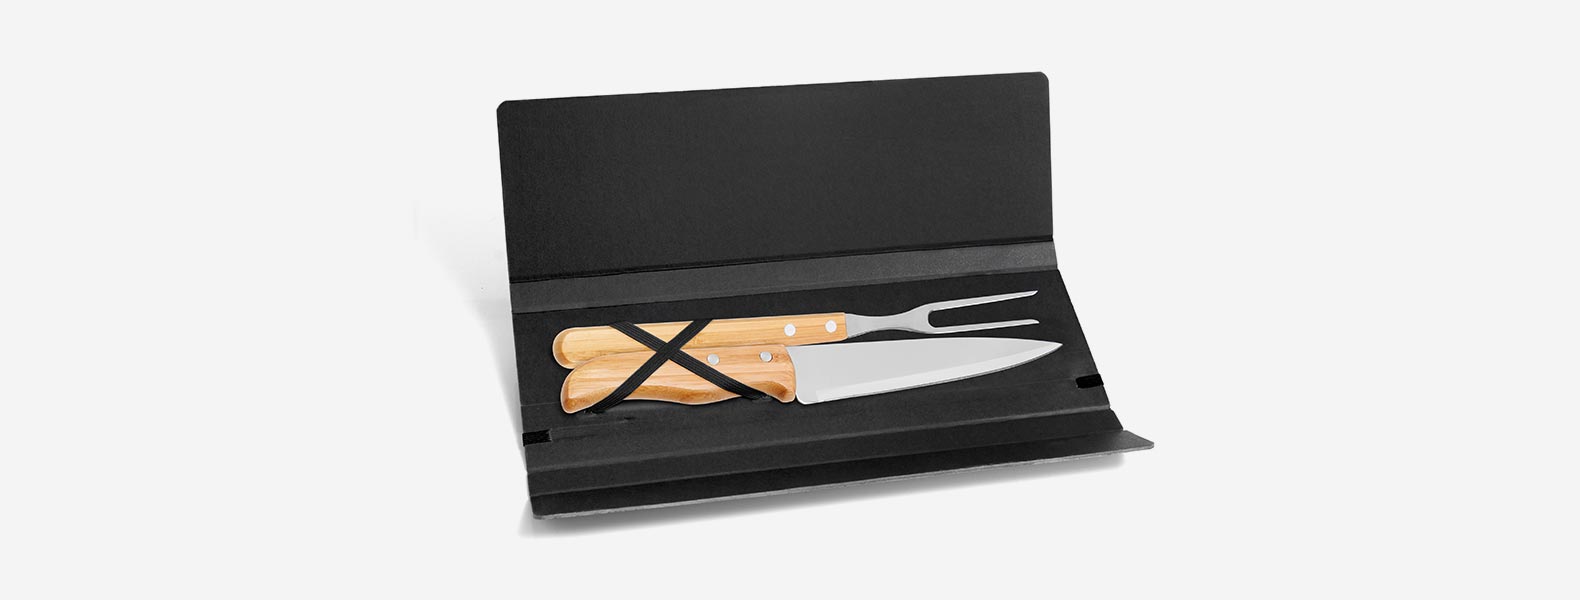 Conjunto composto por uma faca 7” e um garfo trinchante, ambos com cabos em Bambu e lâminas em Aço Inox com rebites resistentes. Estão organizados em uma pasta preta com elásticos.